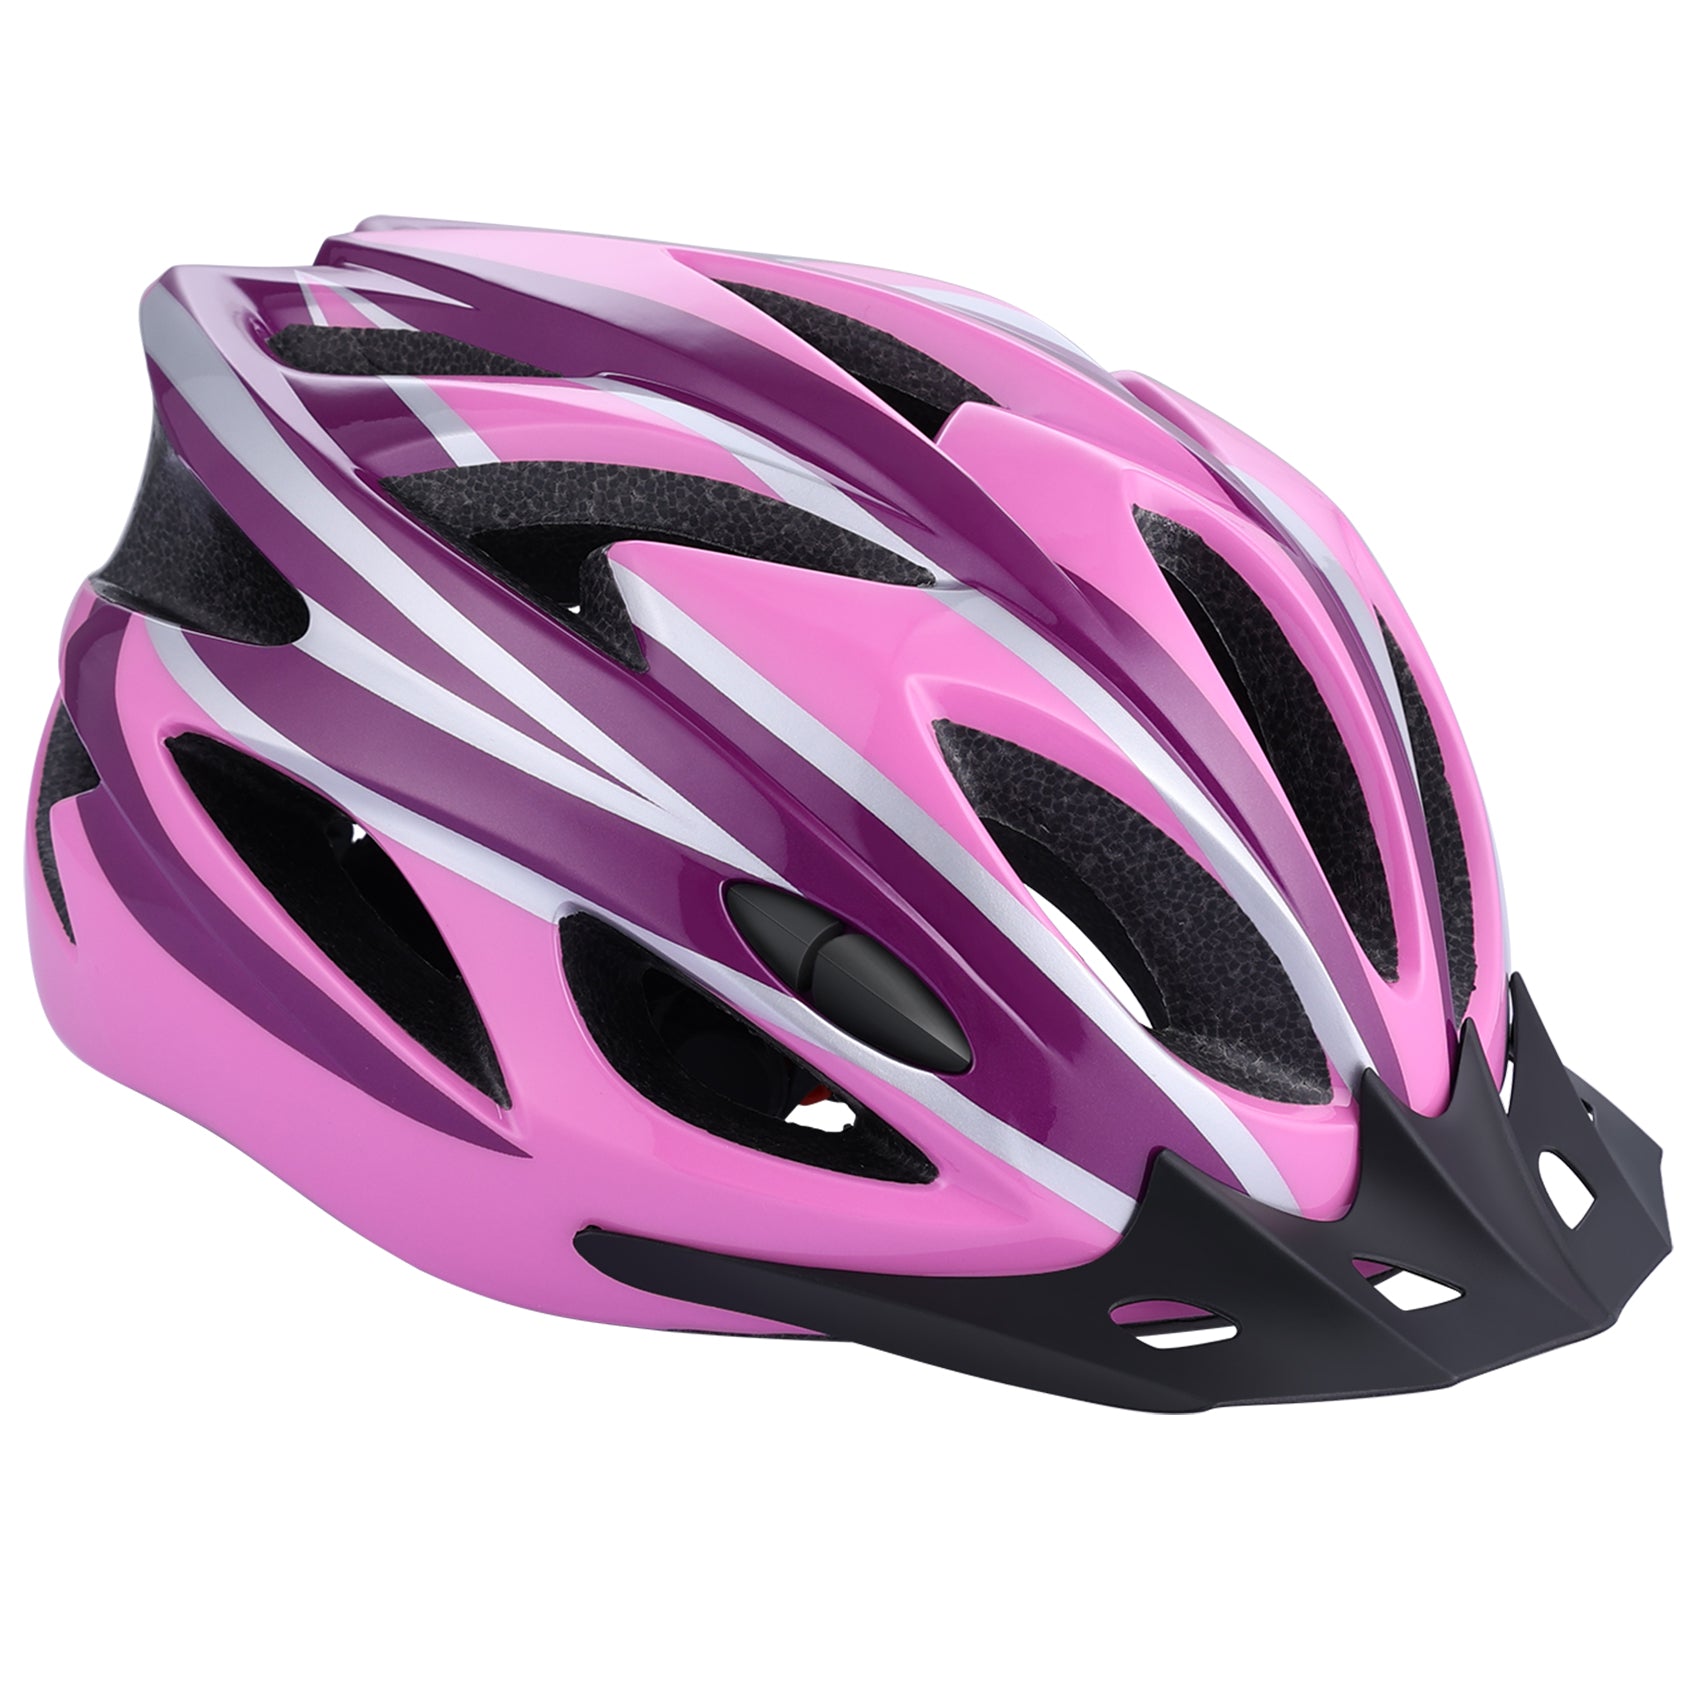  Zacro Adult Bike Helmet Lightweight for Men Women